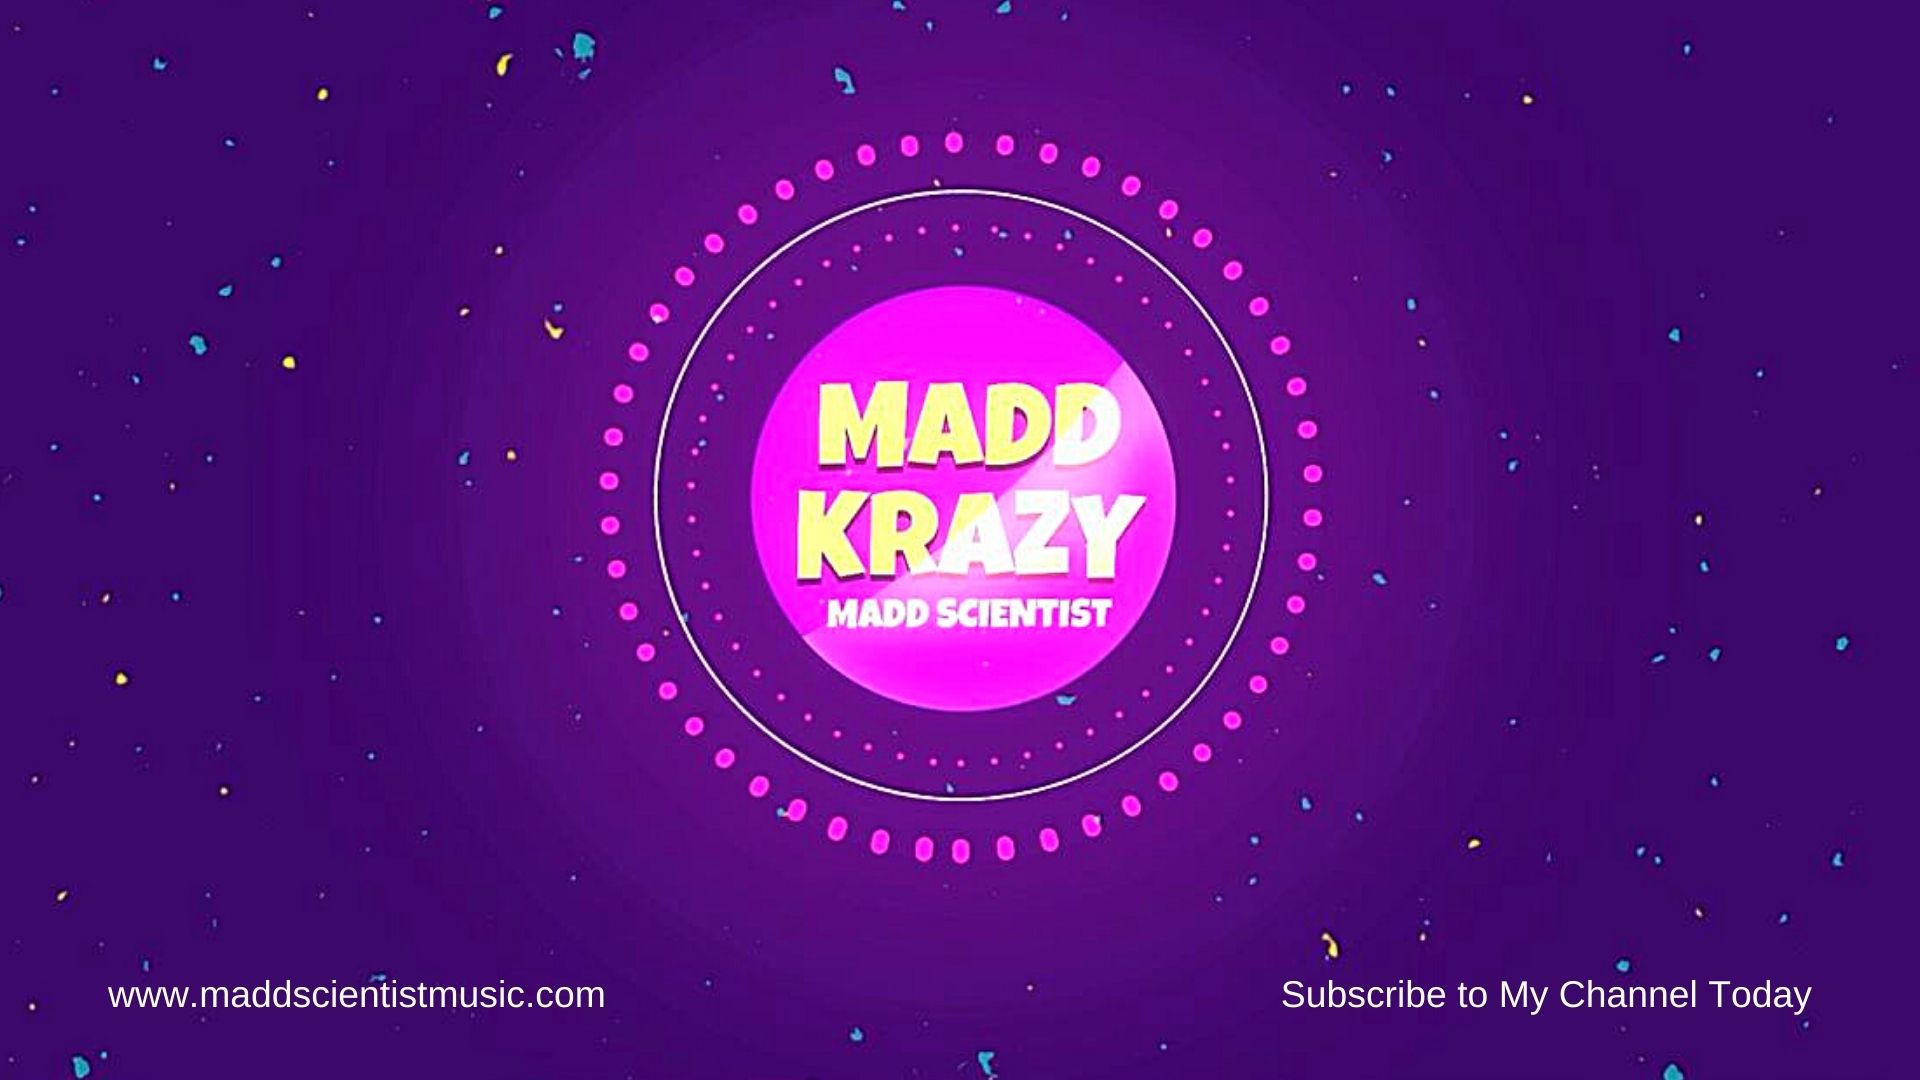 Madd Scientist - "Madd Krazy" Lyric Video